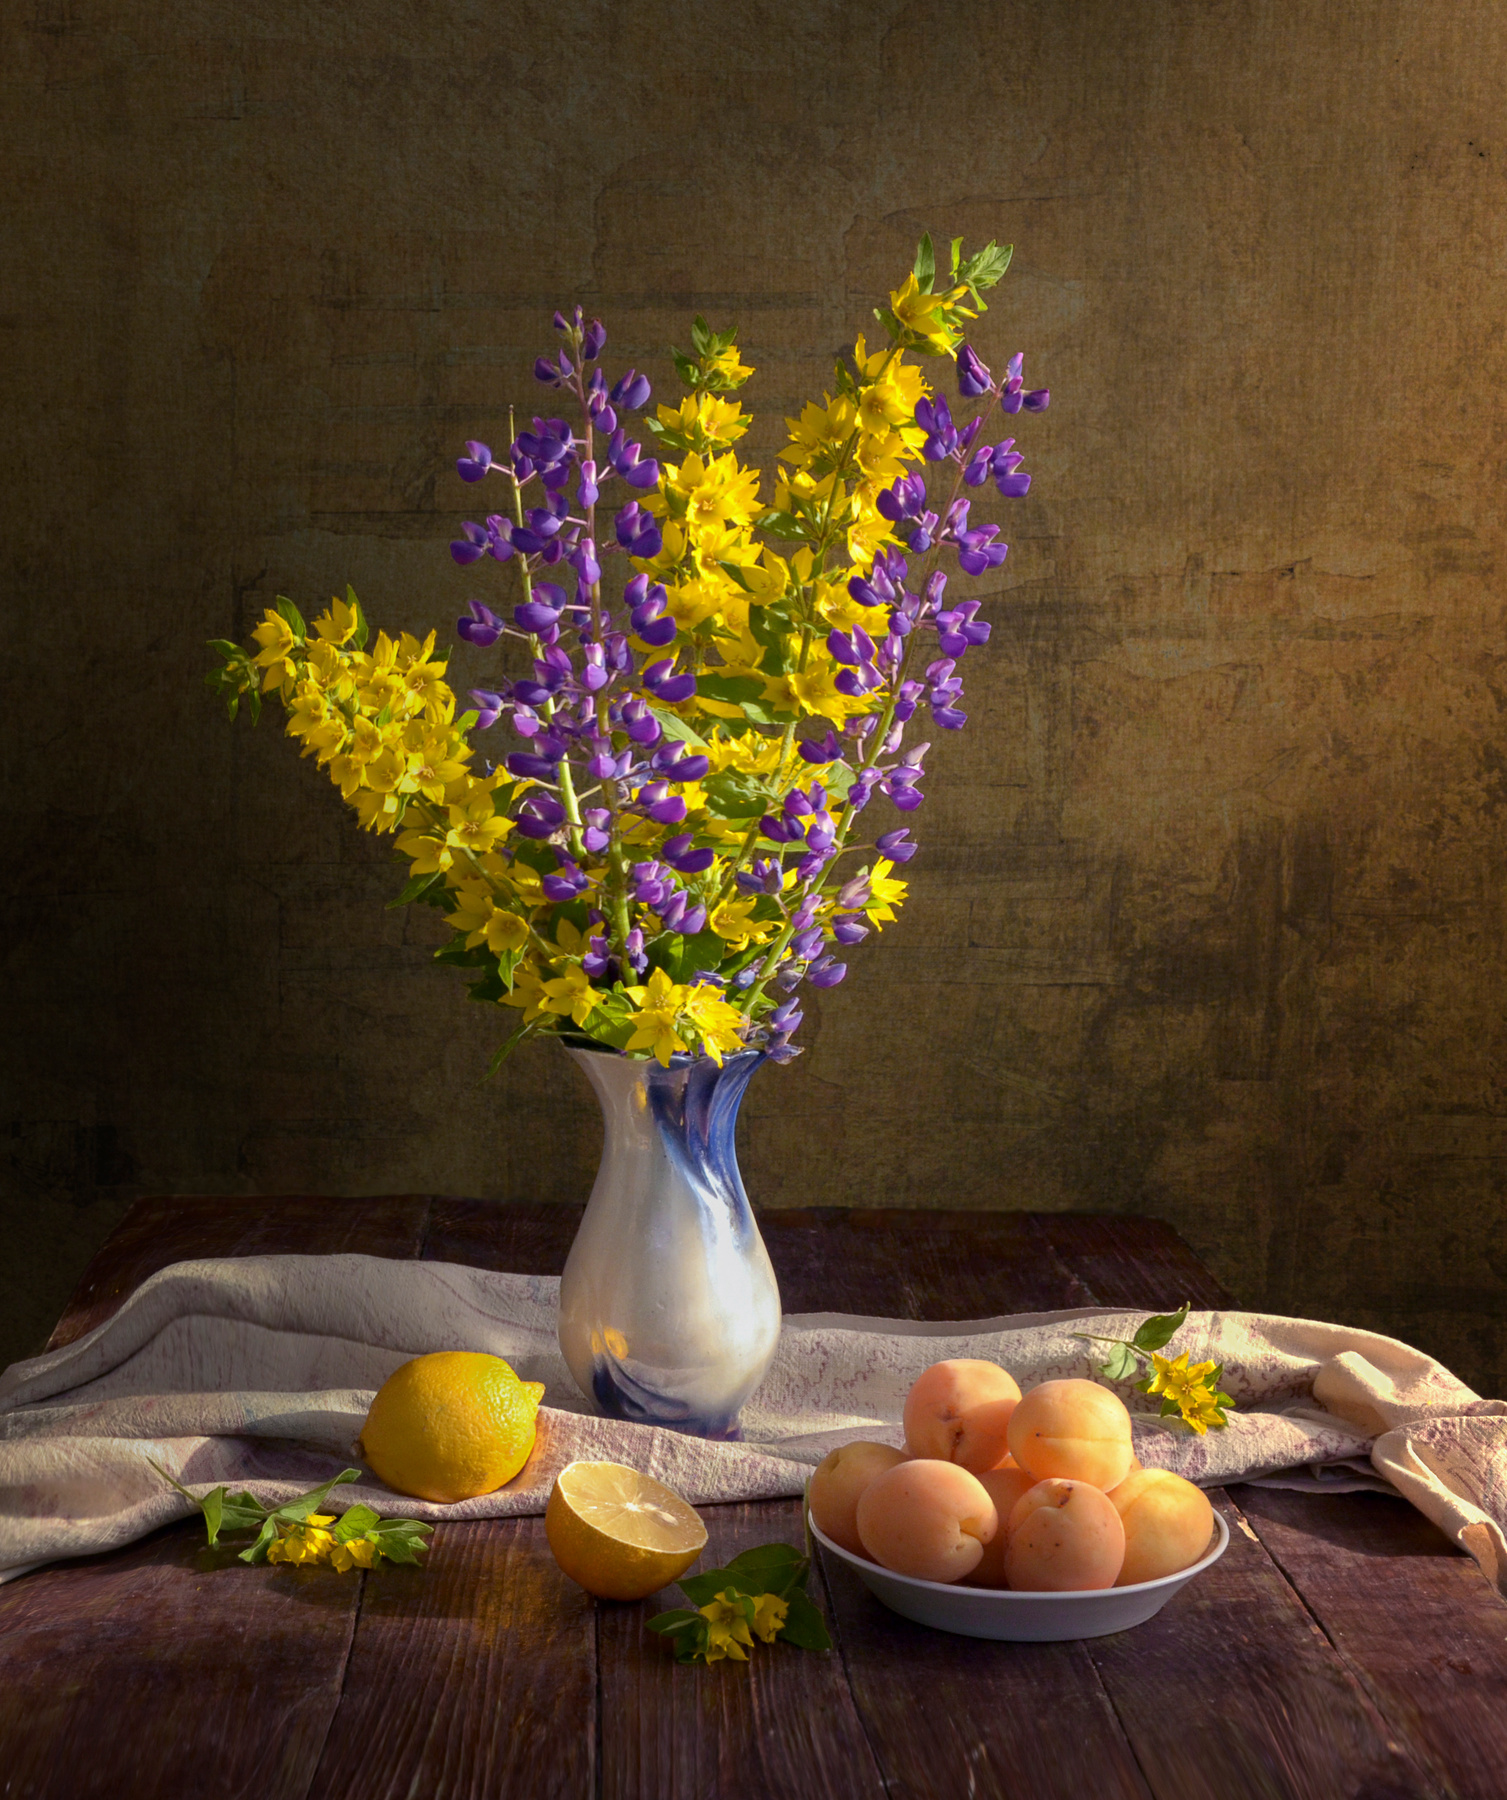 *** цветы в вазе персики лимон